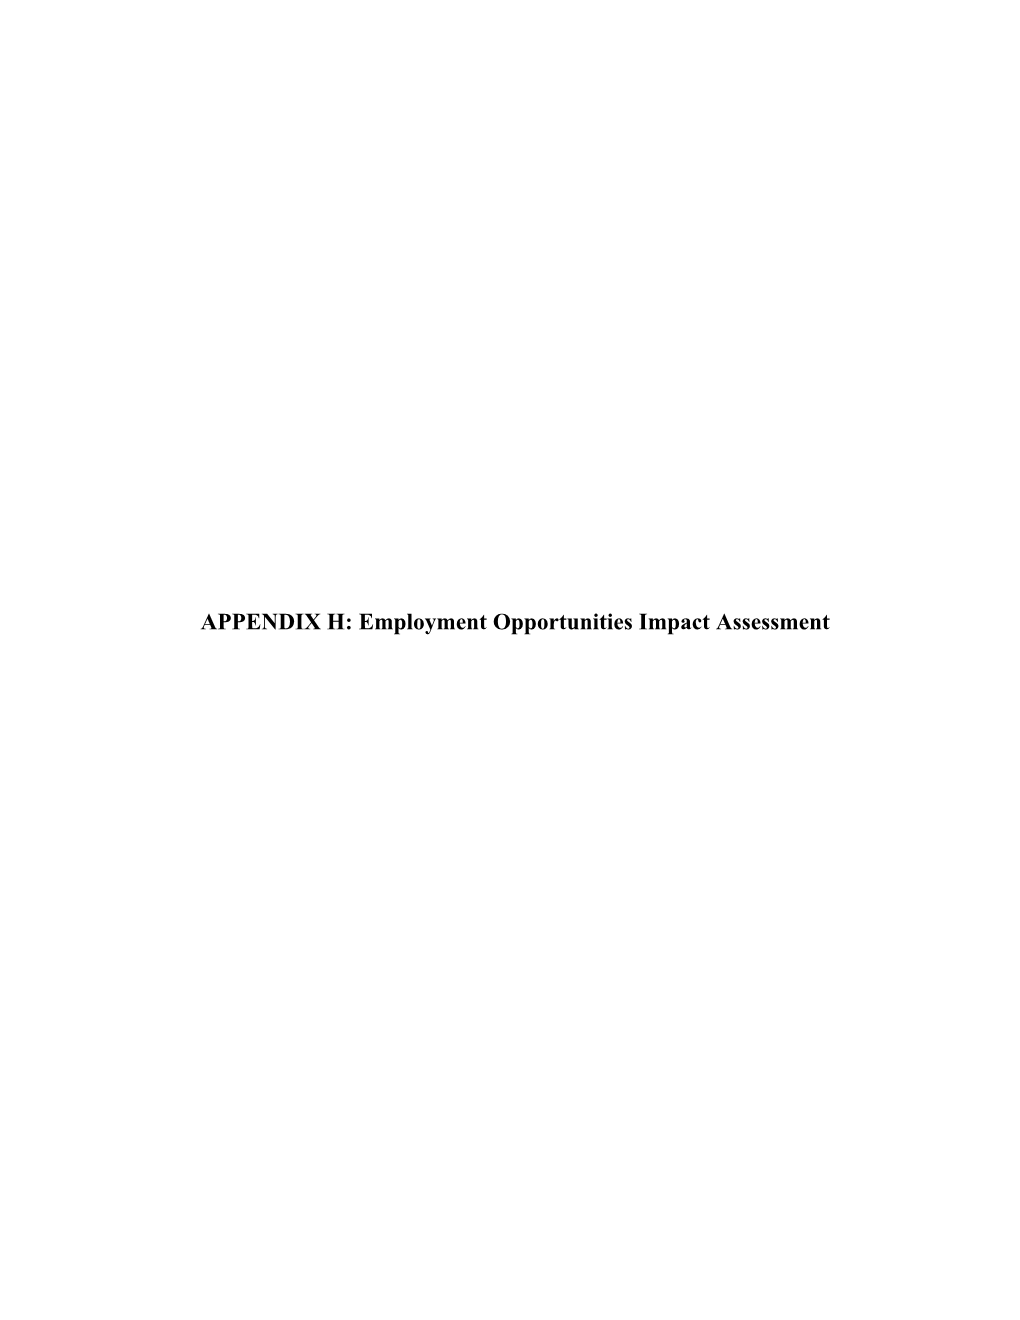 Employment Opportunities Impact Assessment